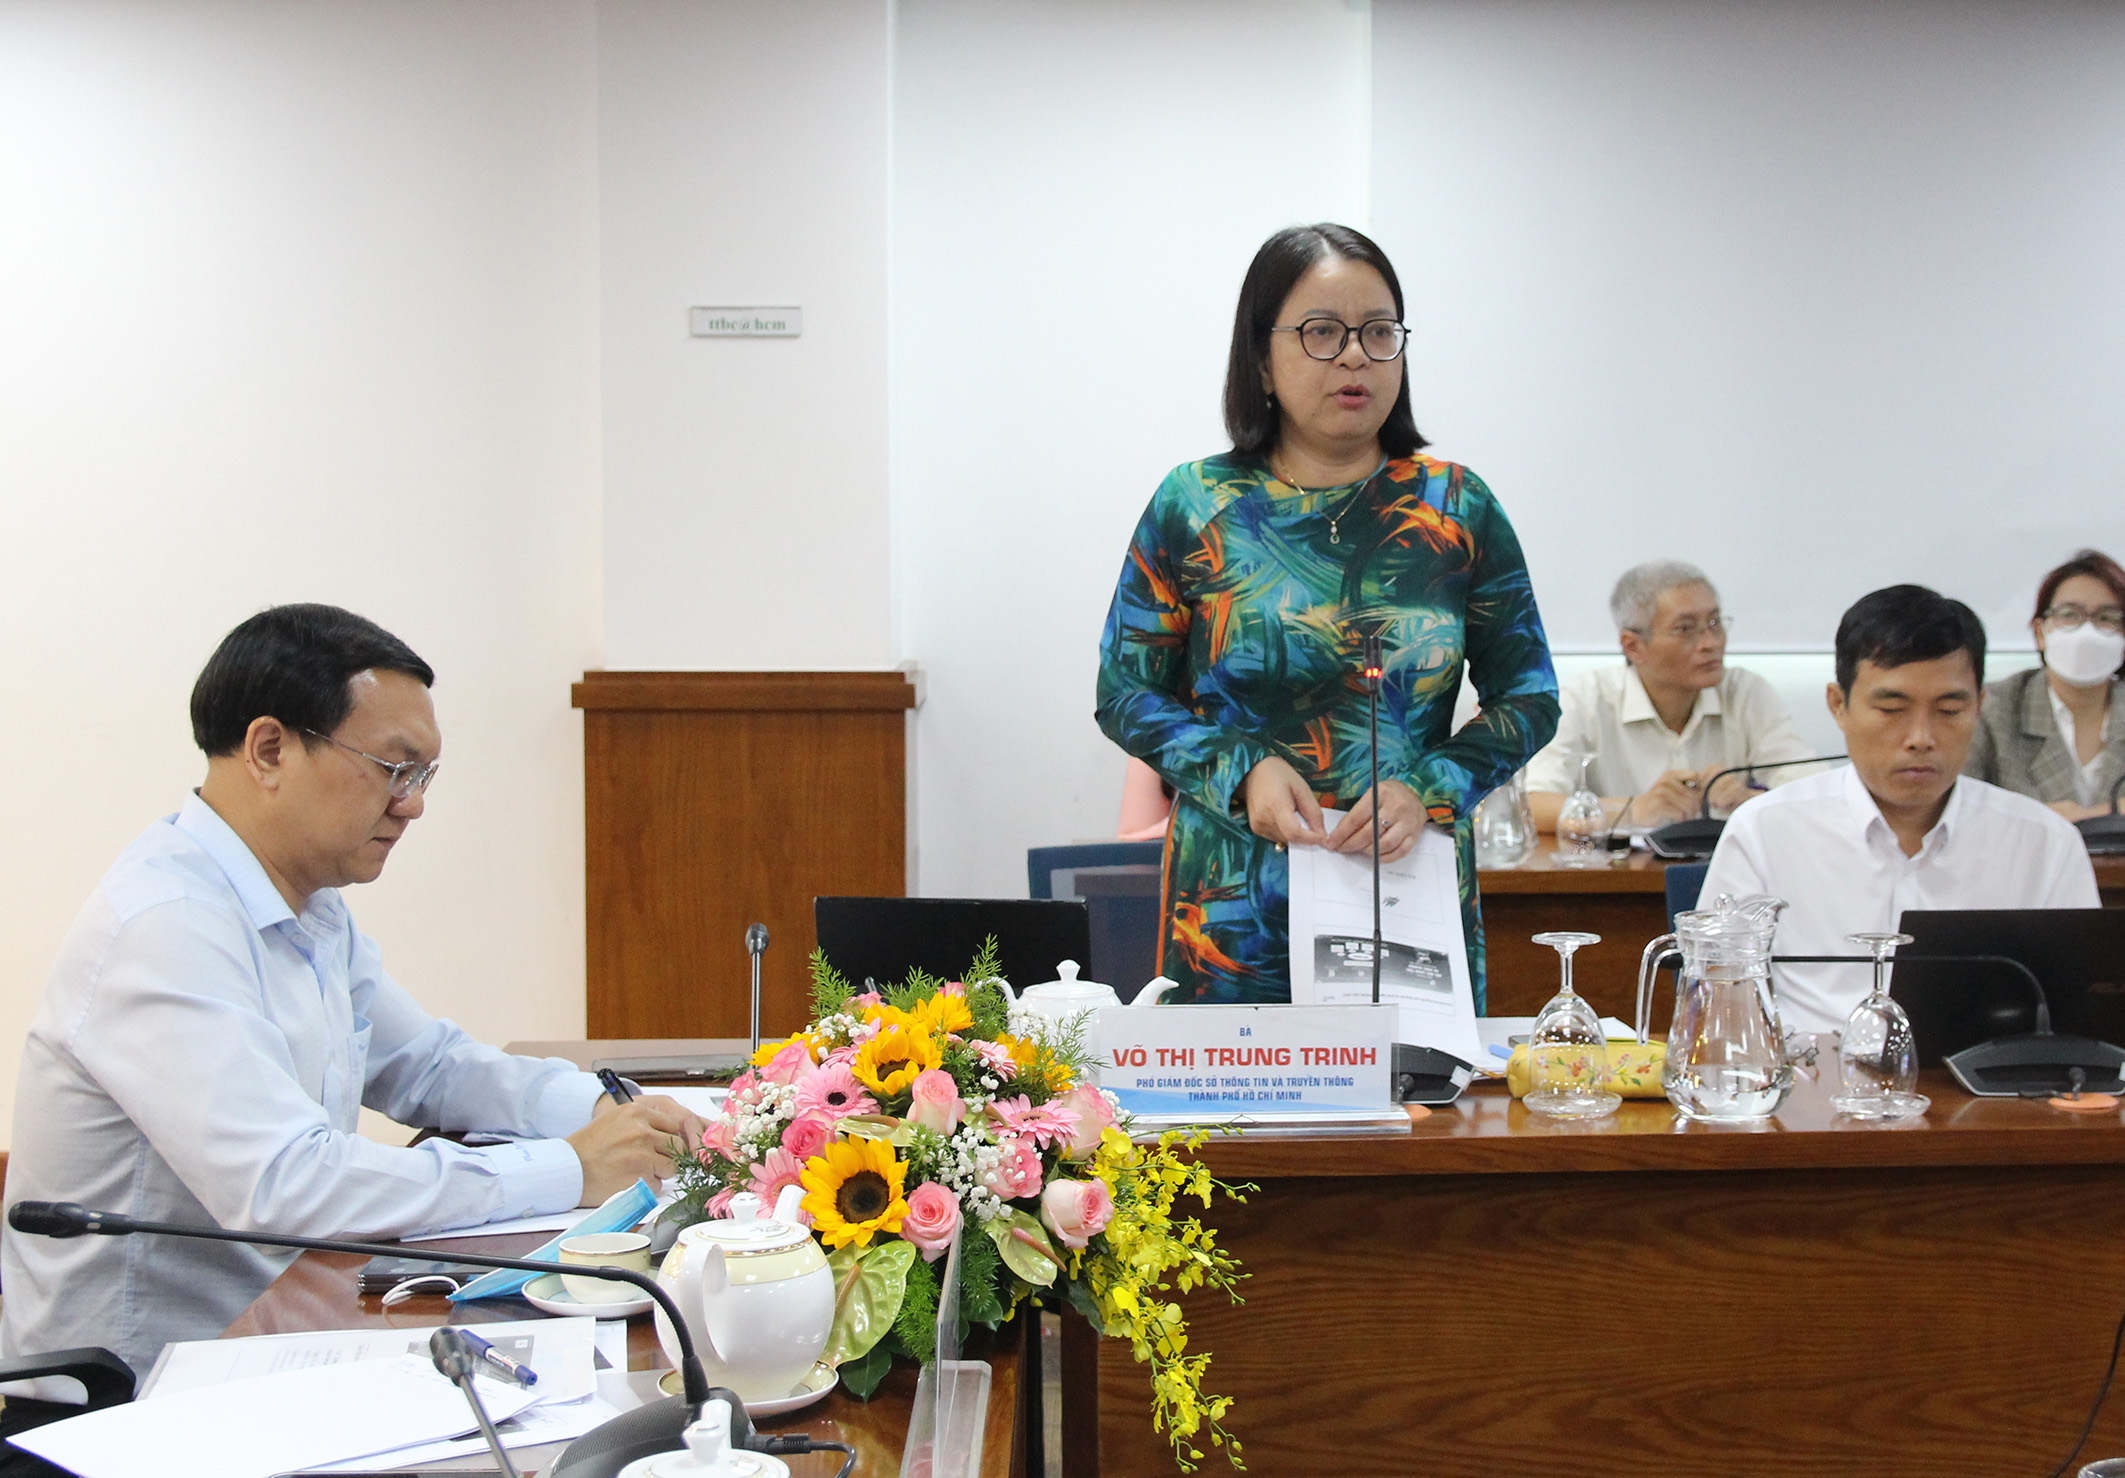 Đồng chí Võ Thị Trung Trinh, Phó Giám đốc Sở Thông tin và Truyền thông TP. Hồ Chí Minh phát biểu tại buổi họp báo công bố 